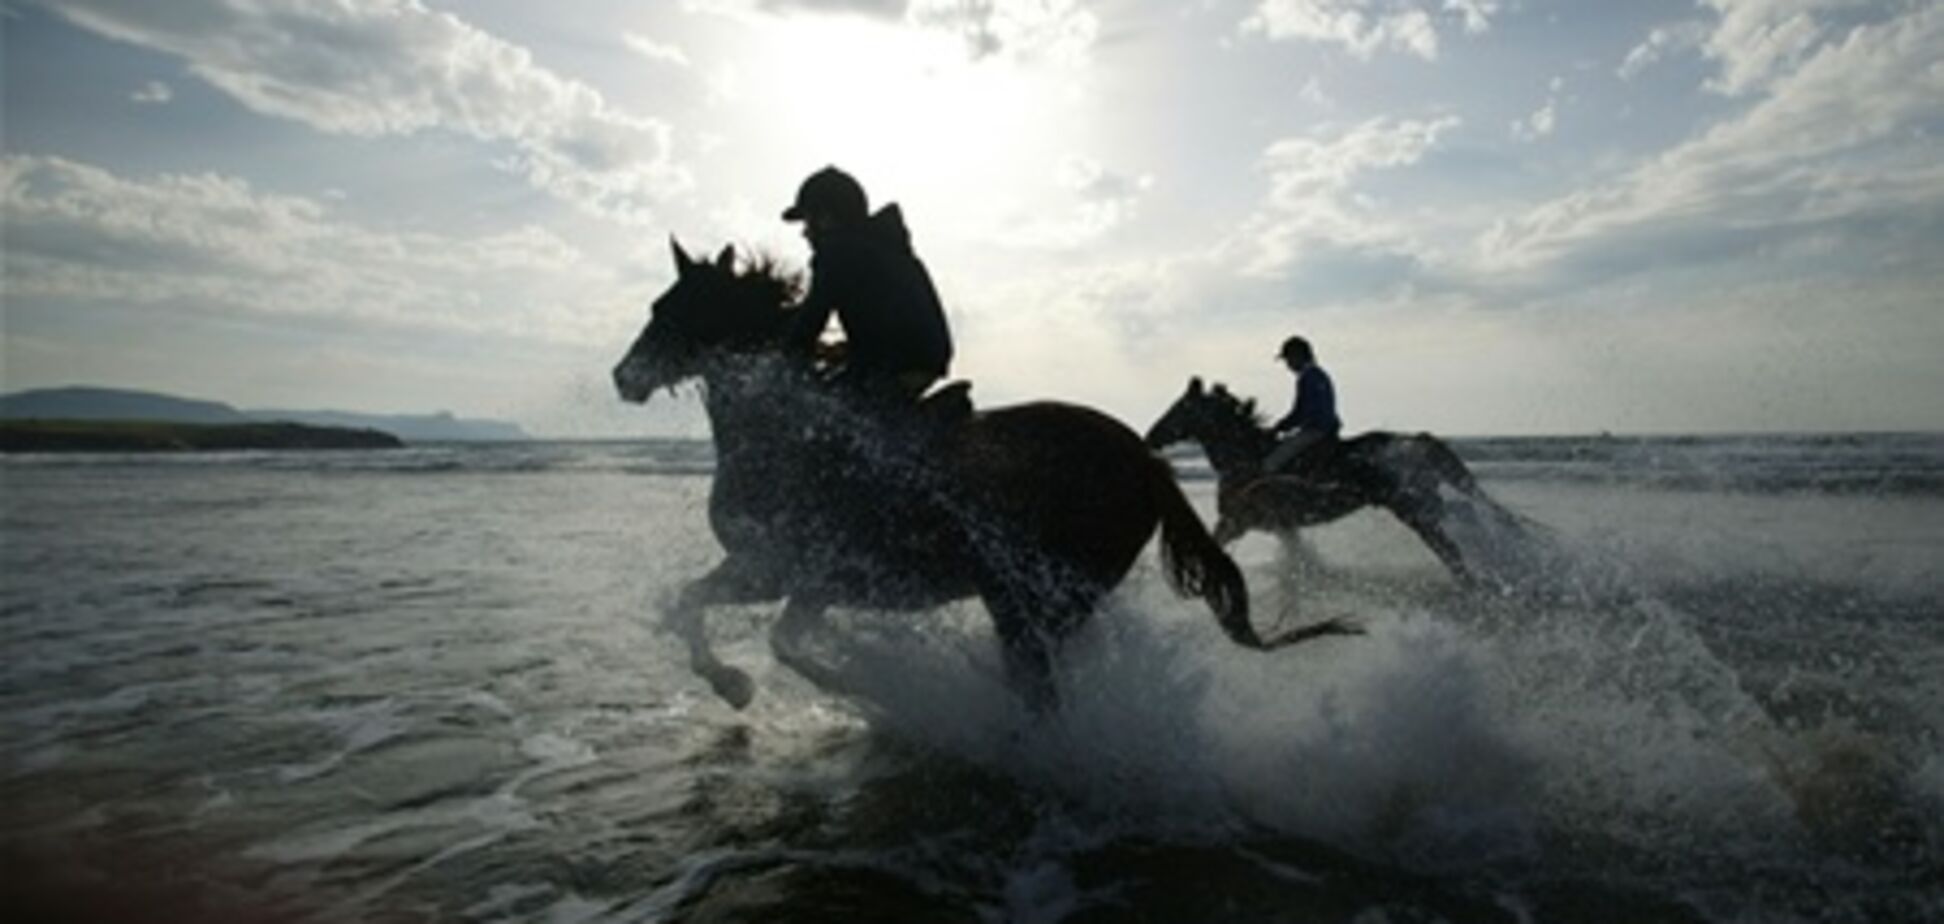 ОАЭ предлагают туристам занятия конным спортом